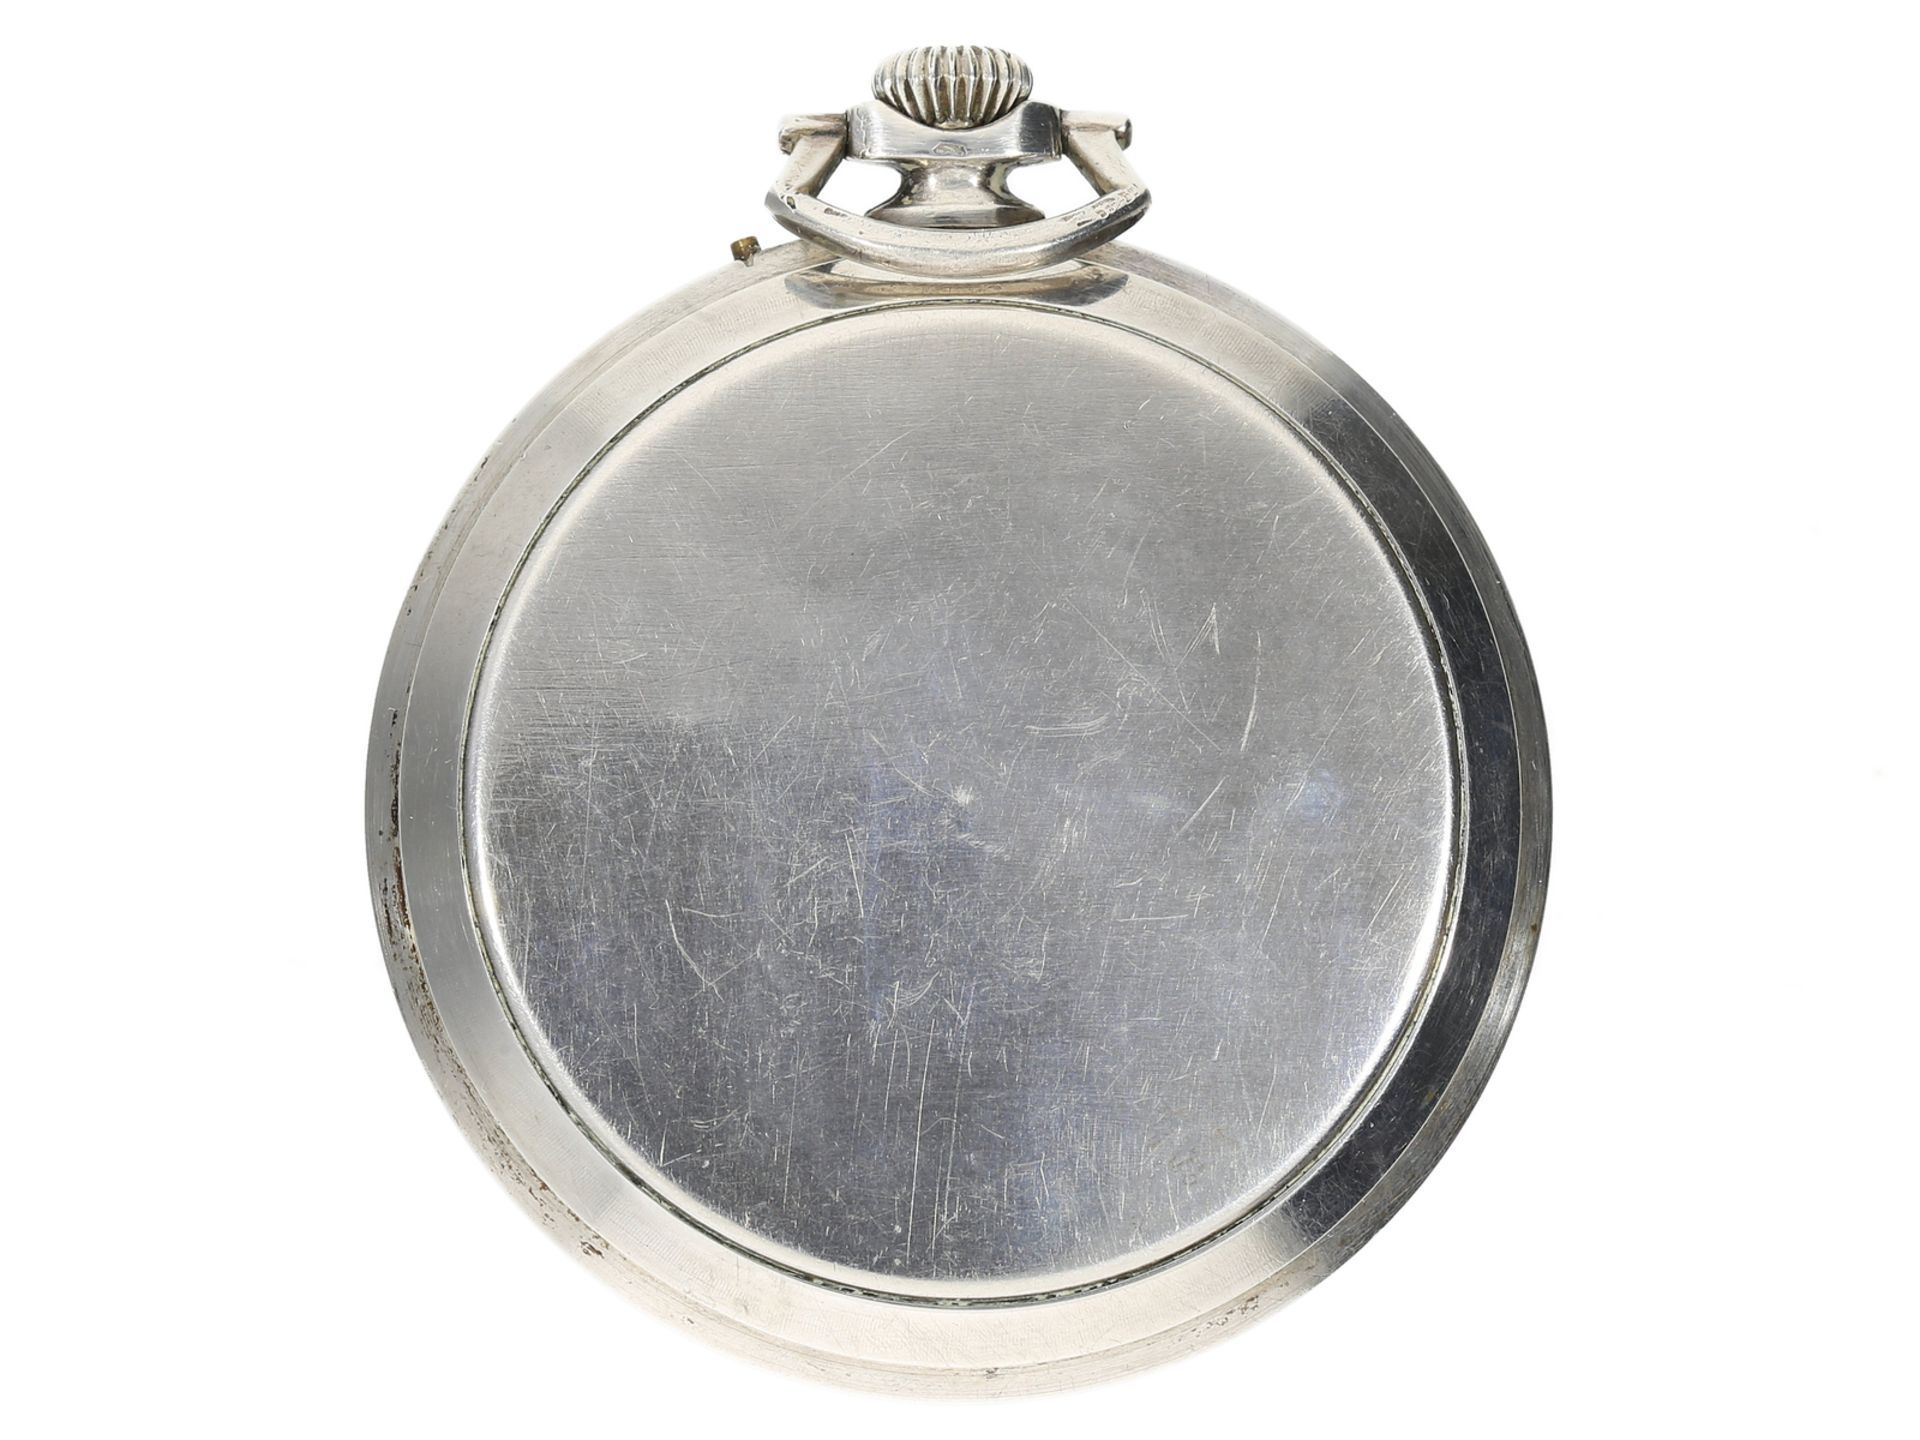 Taschenuhr: elegante Art déco Frackuhr mit Chronometer-Kaliber, Oris Watch Co., ca. 1930 - Bild 2 aus 3